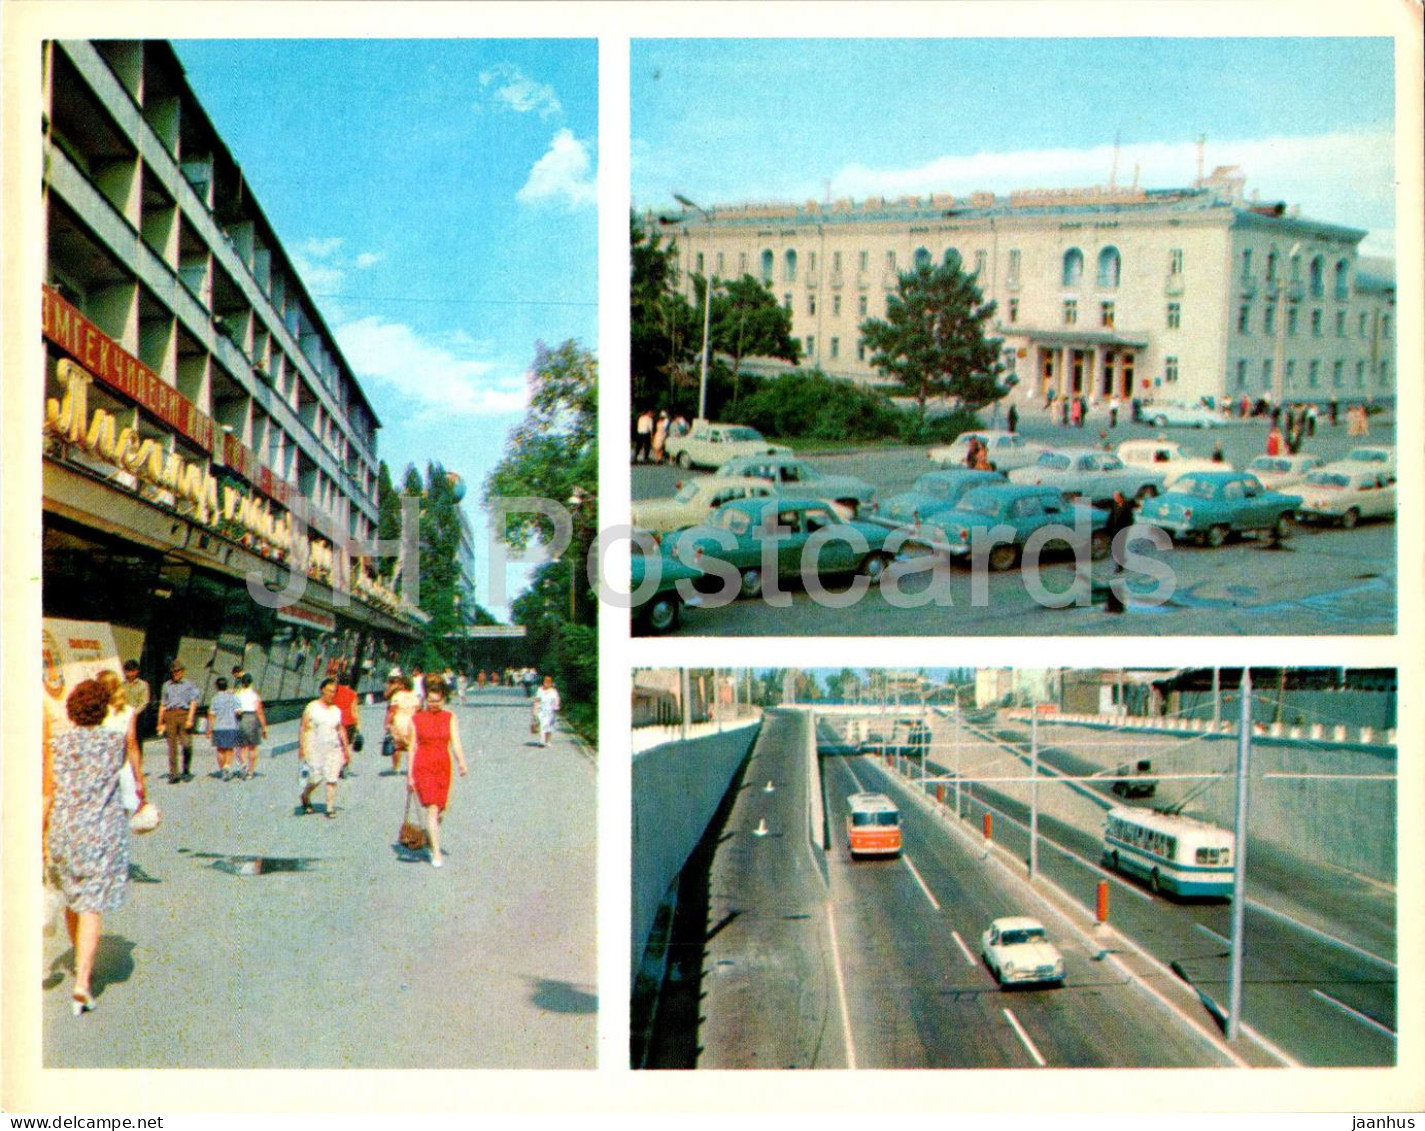 Bishkek - Frunze - House Of Clothes - Ala Too Hotel - Mir Avenue - Car Volga Trolleybus 1974 - Kyrgyzstan USSR - Unused - Kyrgyzstan